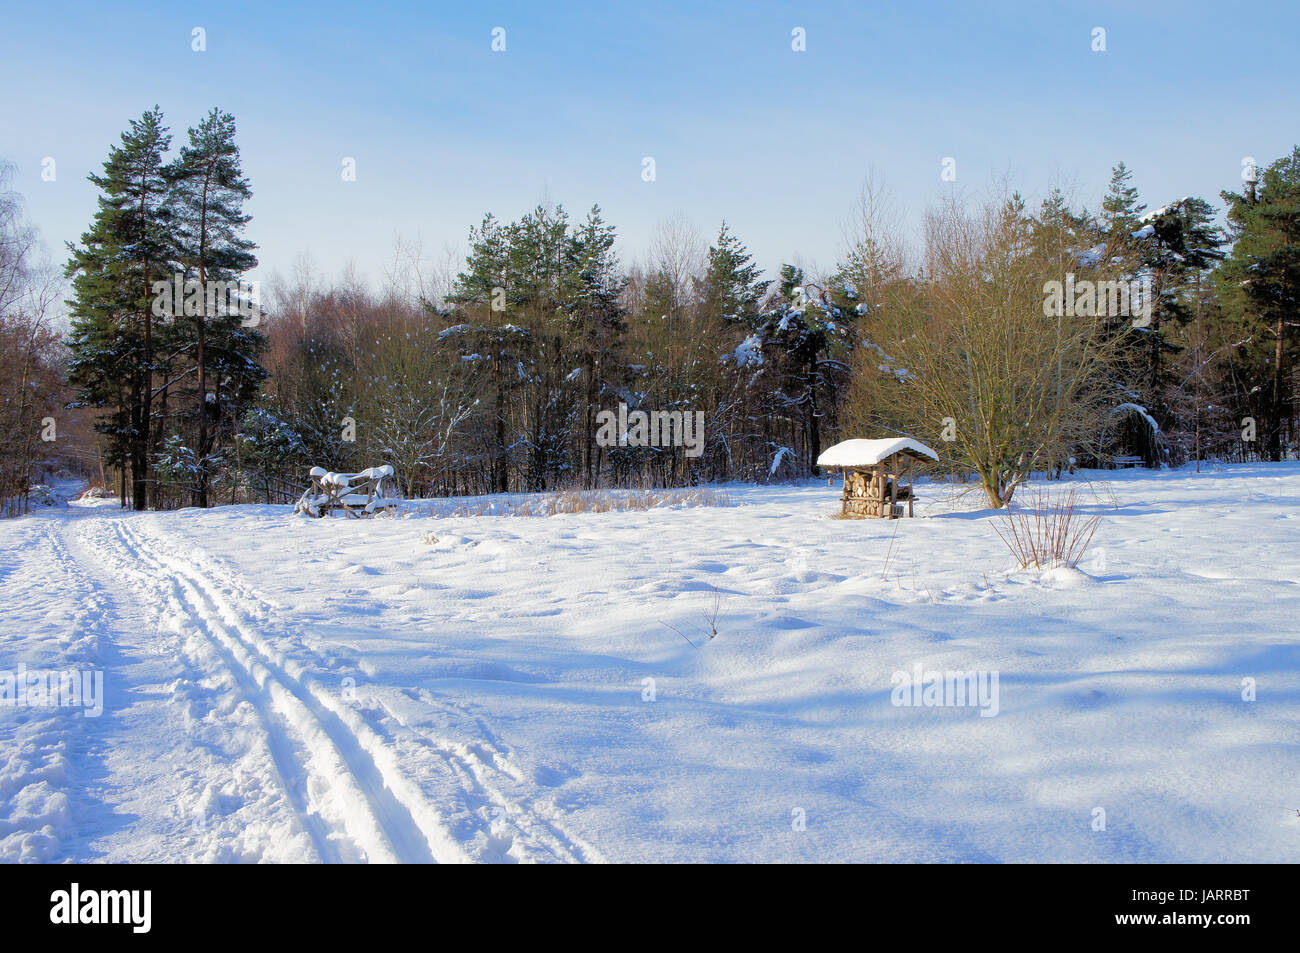 Weg und Skispuren durch eine Winterlandschaft; sonniger Tag mit blauem Himmel Path and ski trails through a winter landscape; sunny day with blue sky Stock Photo